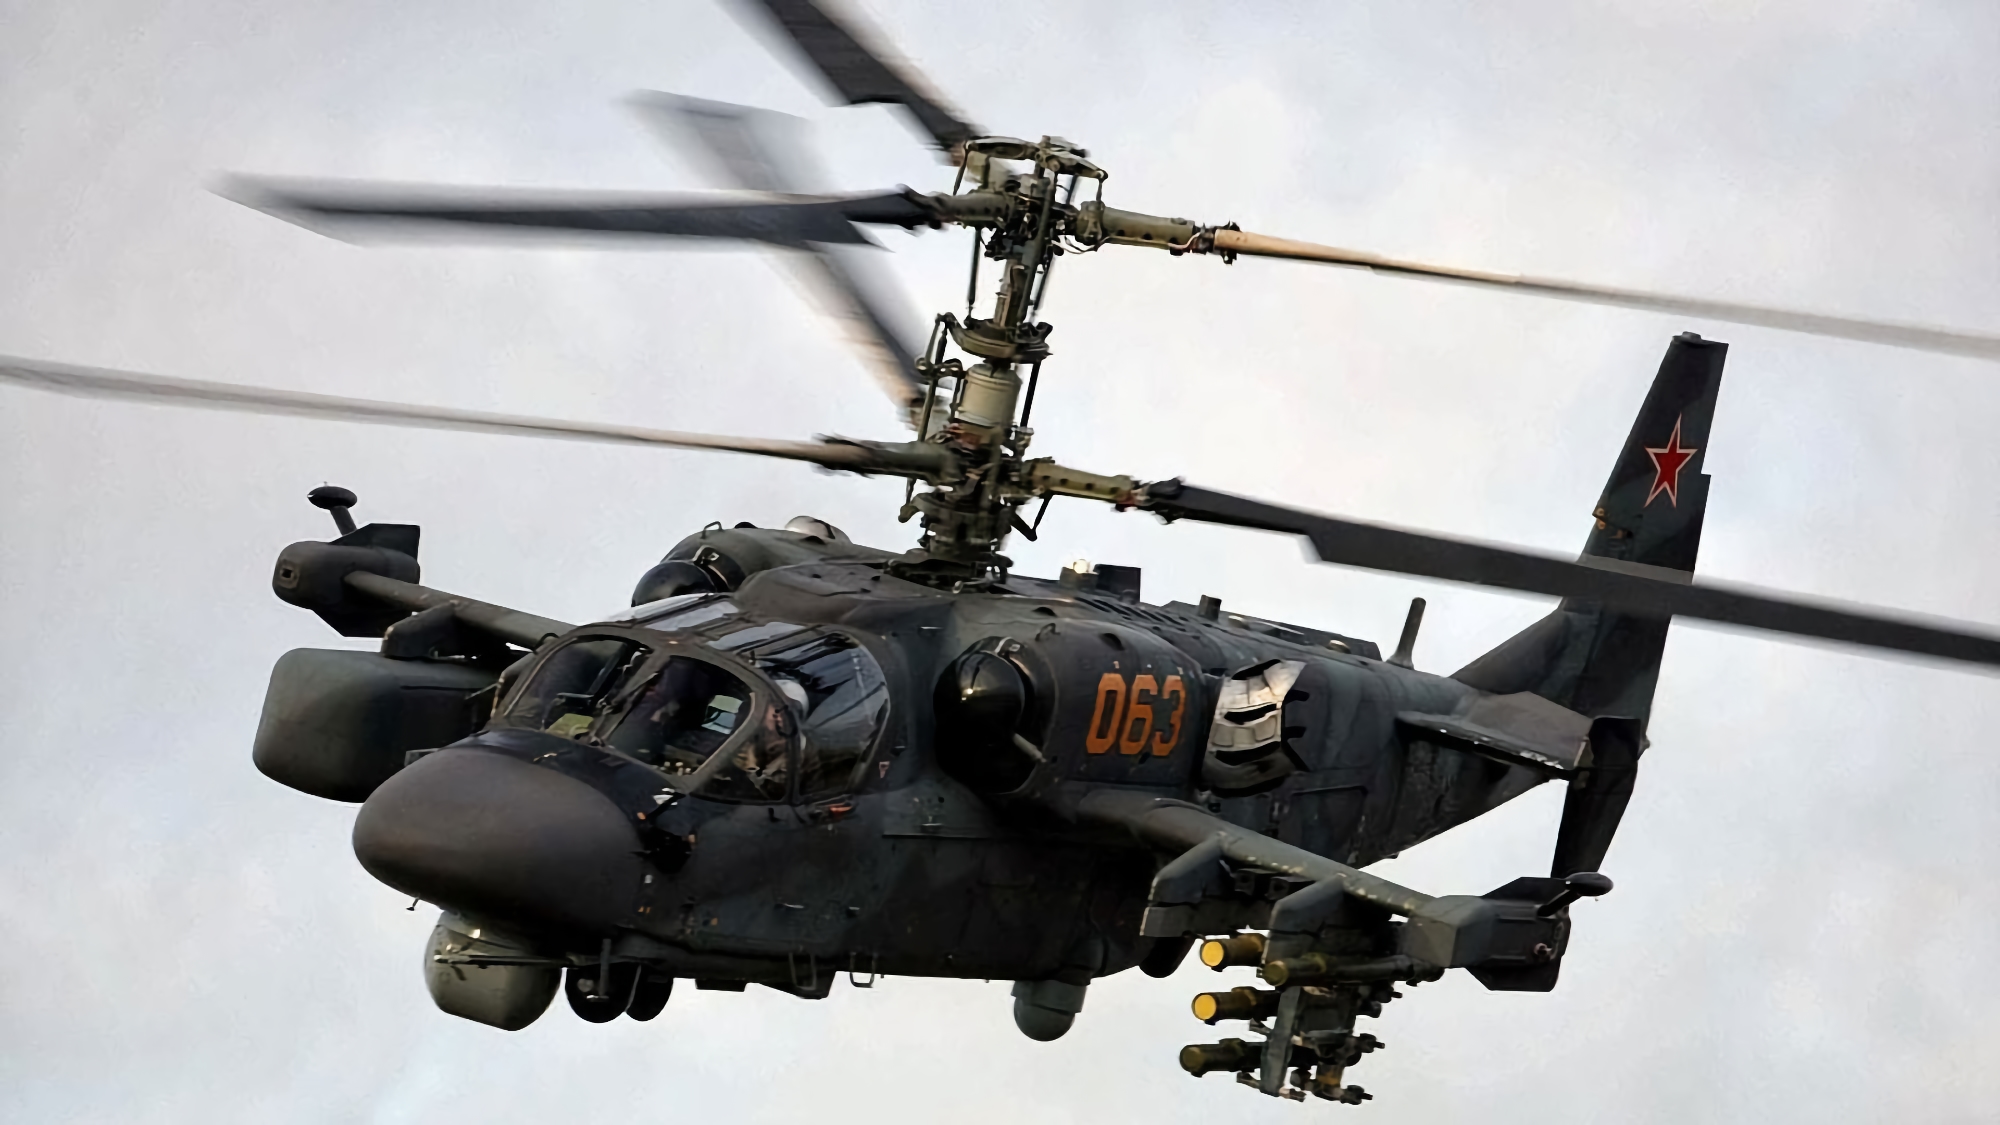 La inteligencia británica: Ucrania ha destruido al menos 23 helicópteros rusos avanzados Ka-52 "Alligator" por valor de 368.000.000 dólares